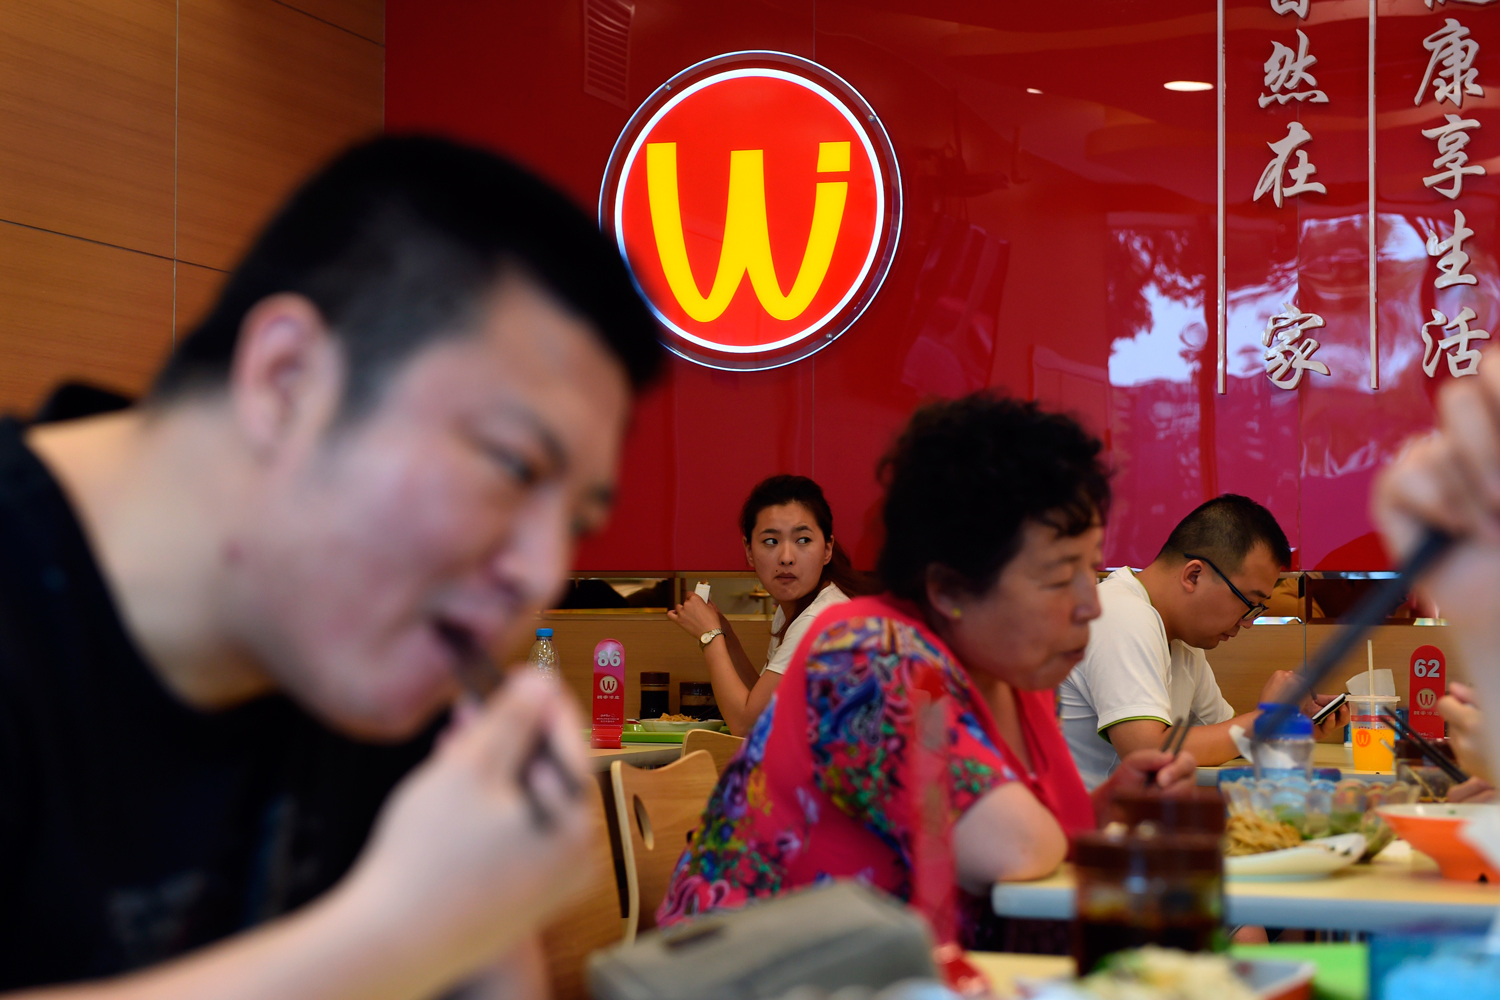 Wei Jia Liang Pi, "W", un nuevo restaurante de comida rápida en China